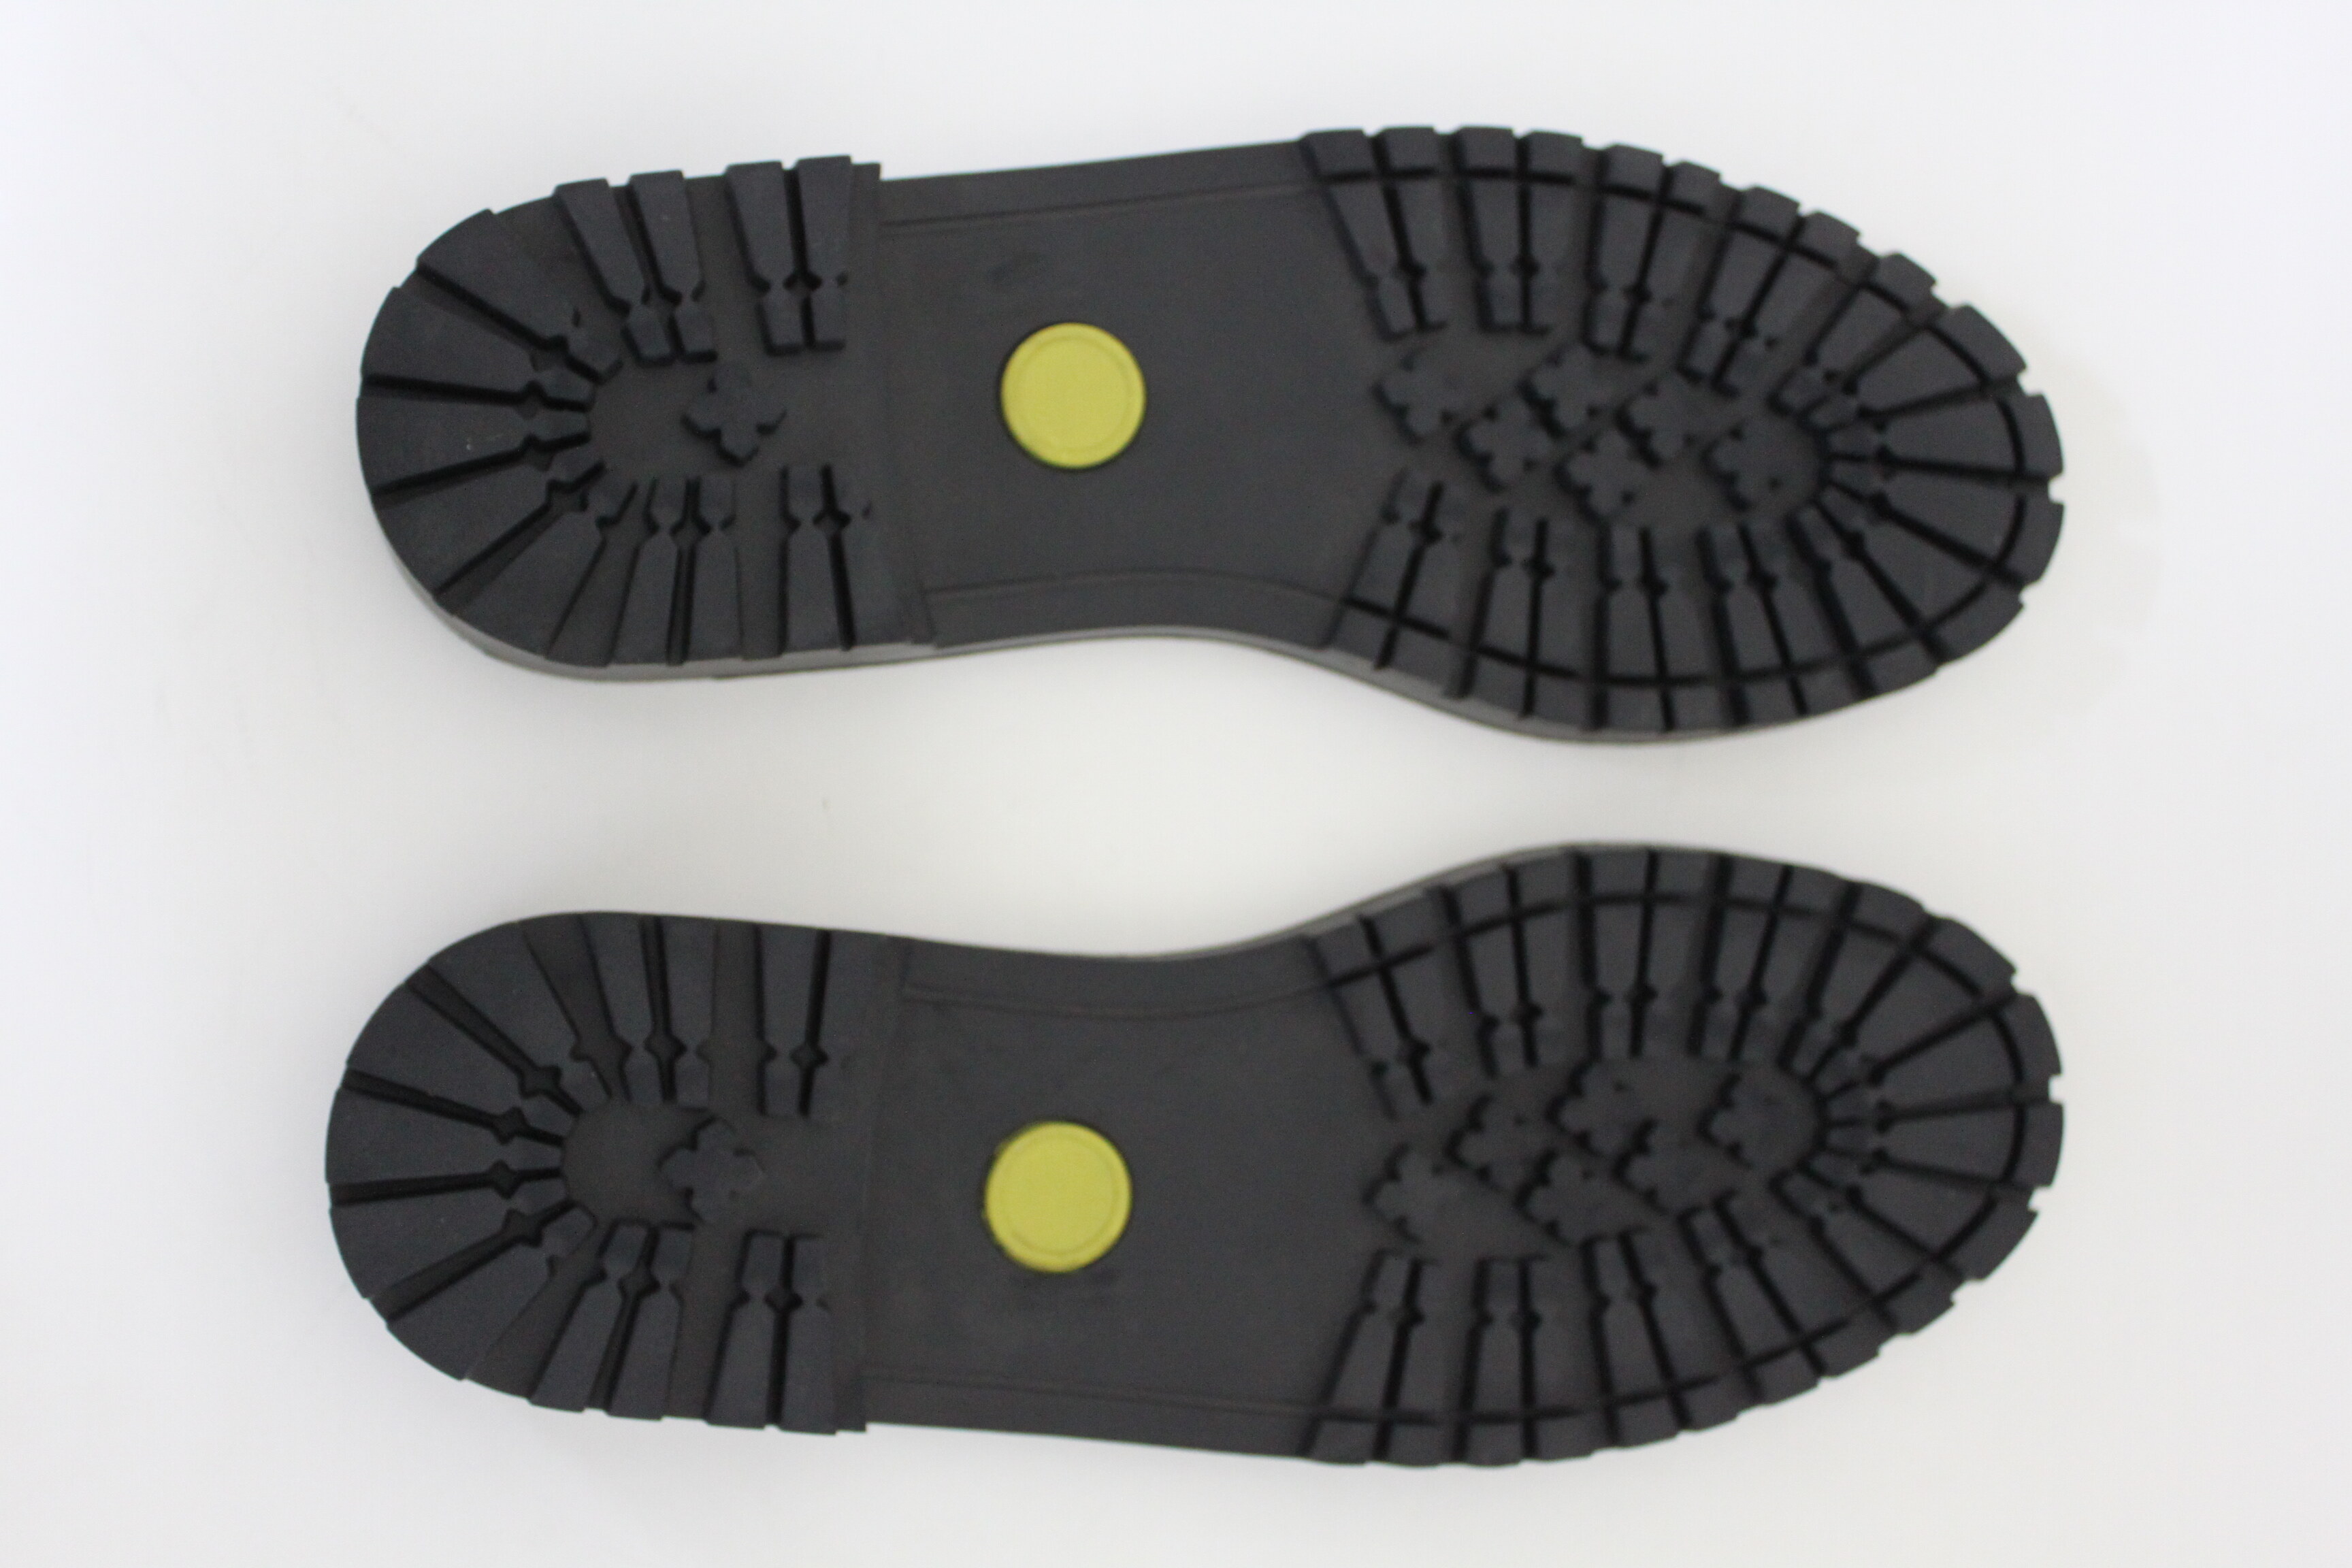 พื้นรองเท้ายางสีดำ (รองเท้าทหาร / รด. / คอมแบท / บู๊ท สำหรับงานเปลี่ยน หรือ ซ๋อมรองเท้า